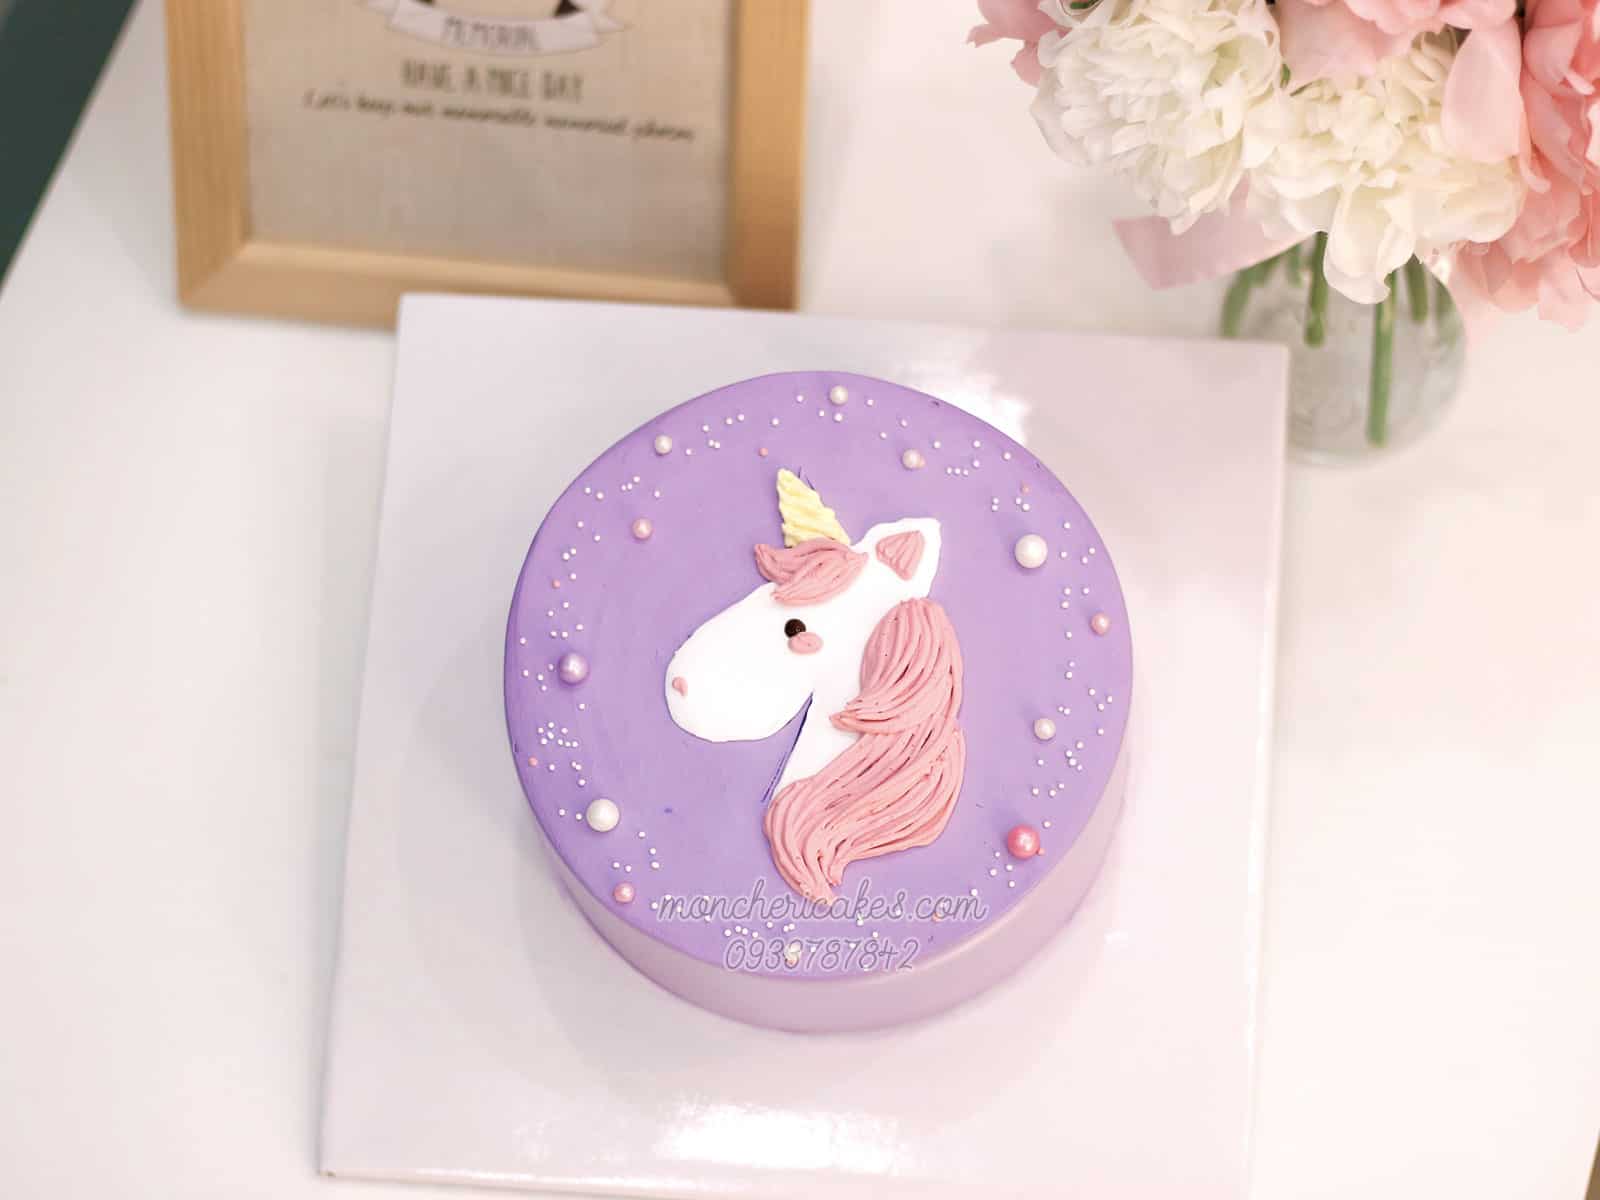 Với những ai yêu thích quá trình làm bánh và đam mê thế giới phép thuật, bánh kem unicorn chính là món trang trí không thể bỏ qua. Hãy cùng chiêm ngưỡng hình ảnh những chiếc bánh kem xinh xắn và đầy màu sắc của chúng tôi!